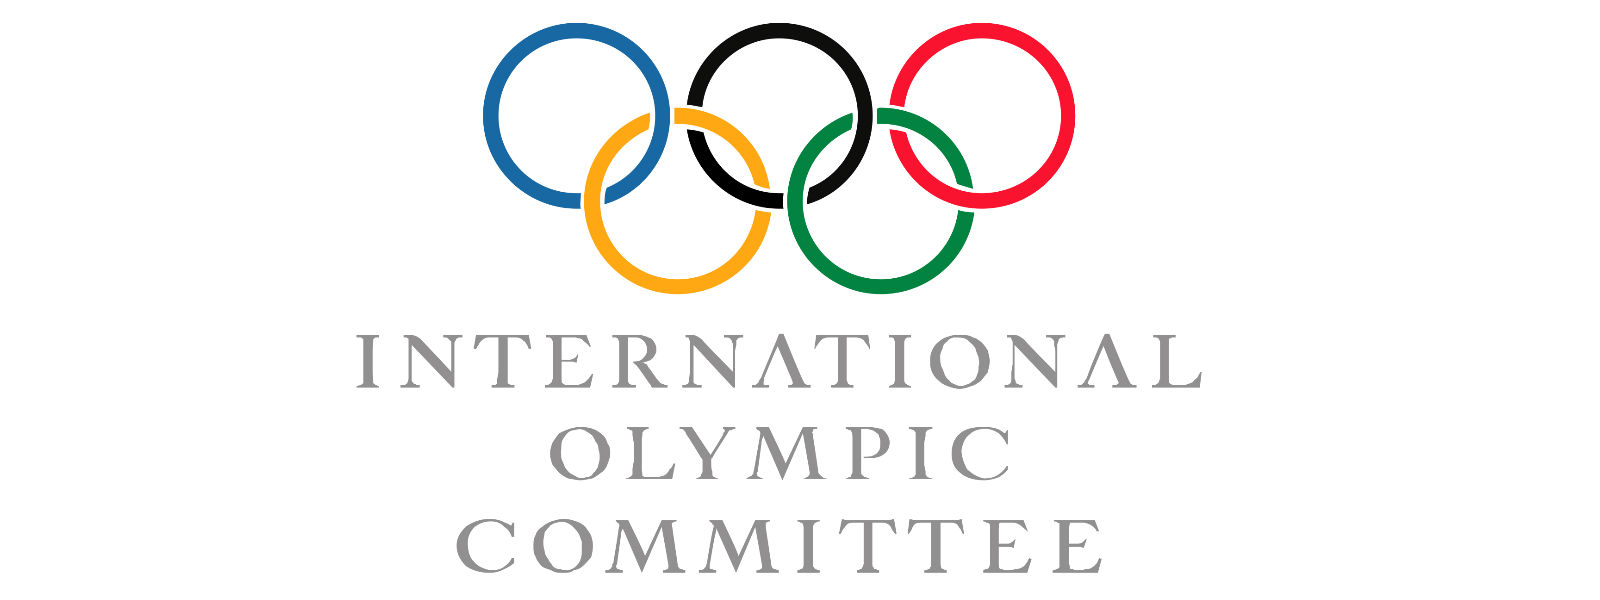 ஒலிம்பிக் விழா இரத்து செய்யப்படலாம் - IOC